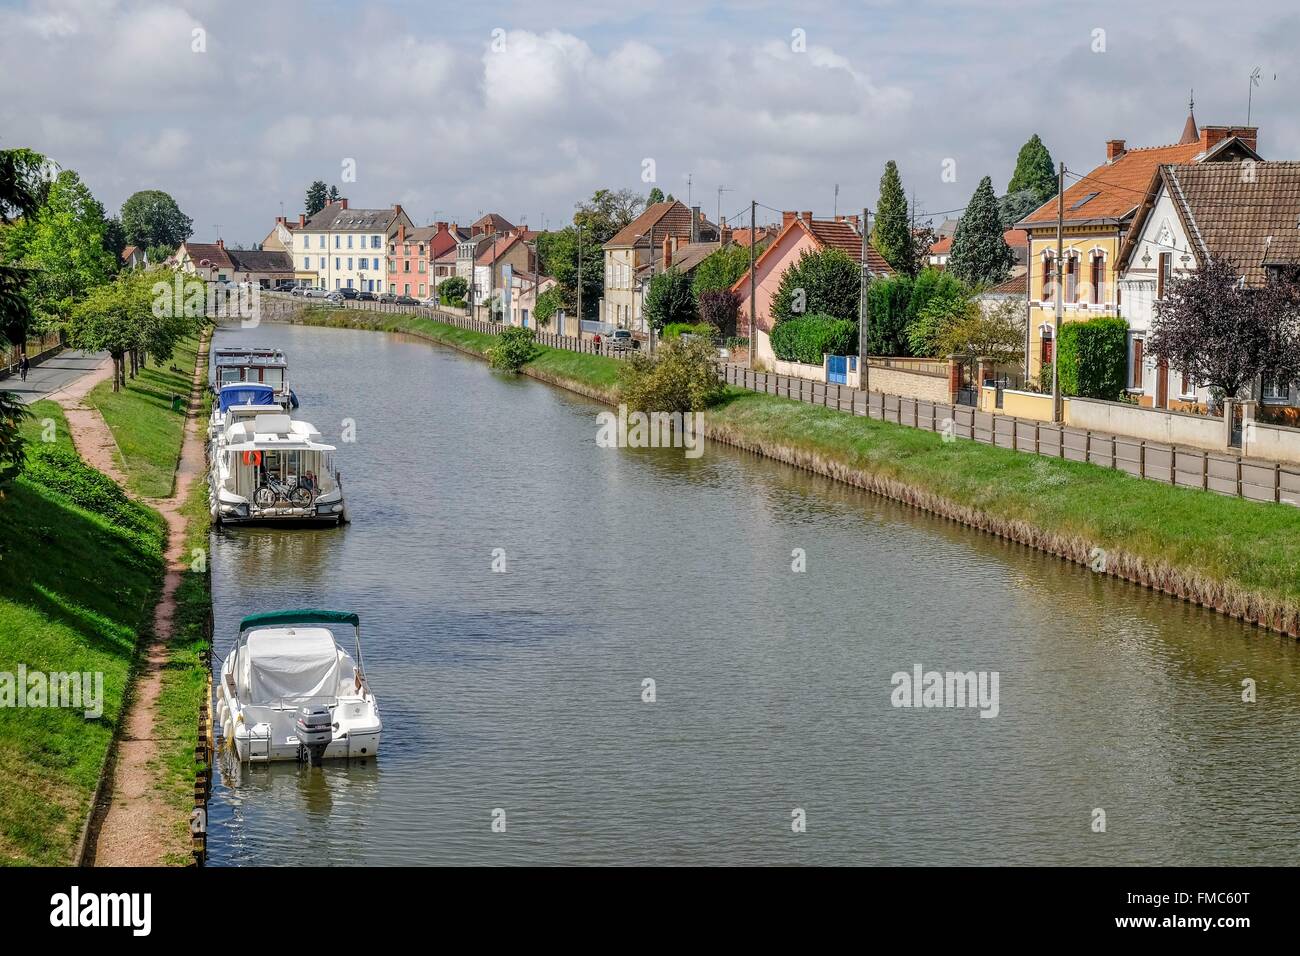 Frankreich, Saone et Loire, Digoin, Canal de Bourgogne (Burgund-Kanal) geht durch die Stadt Stockfoto